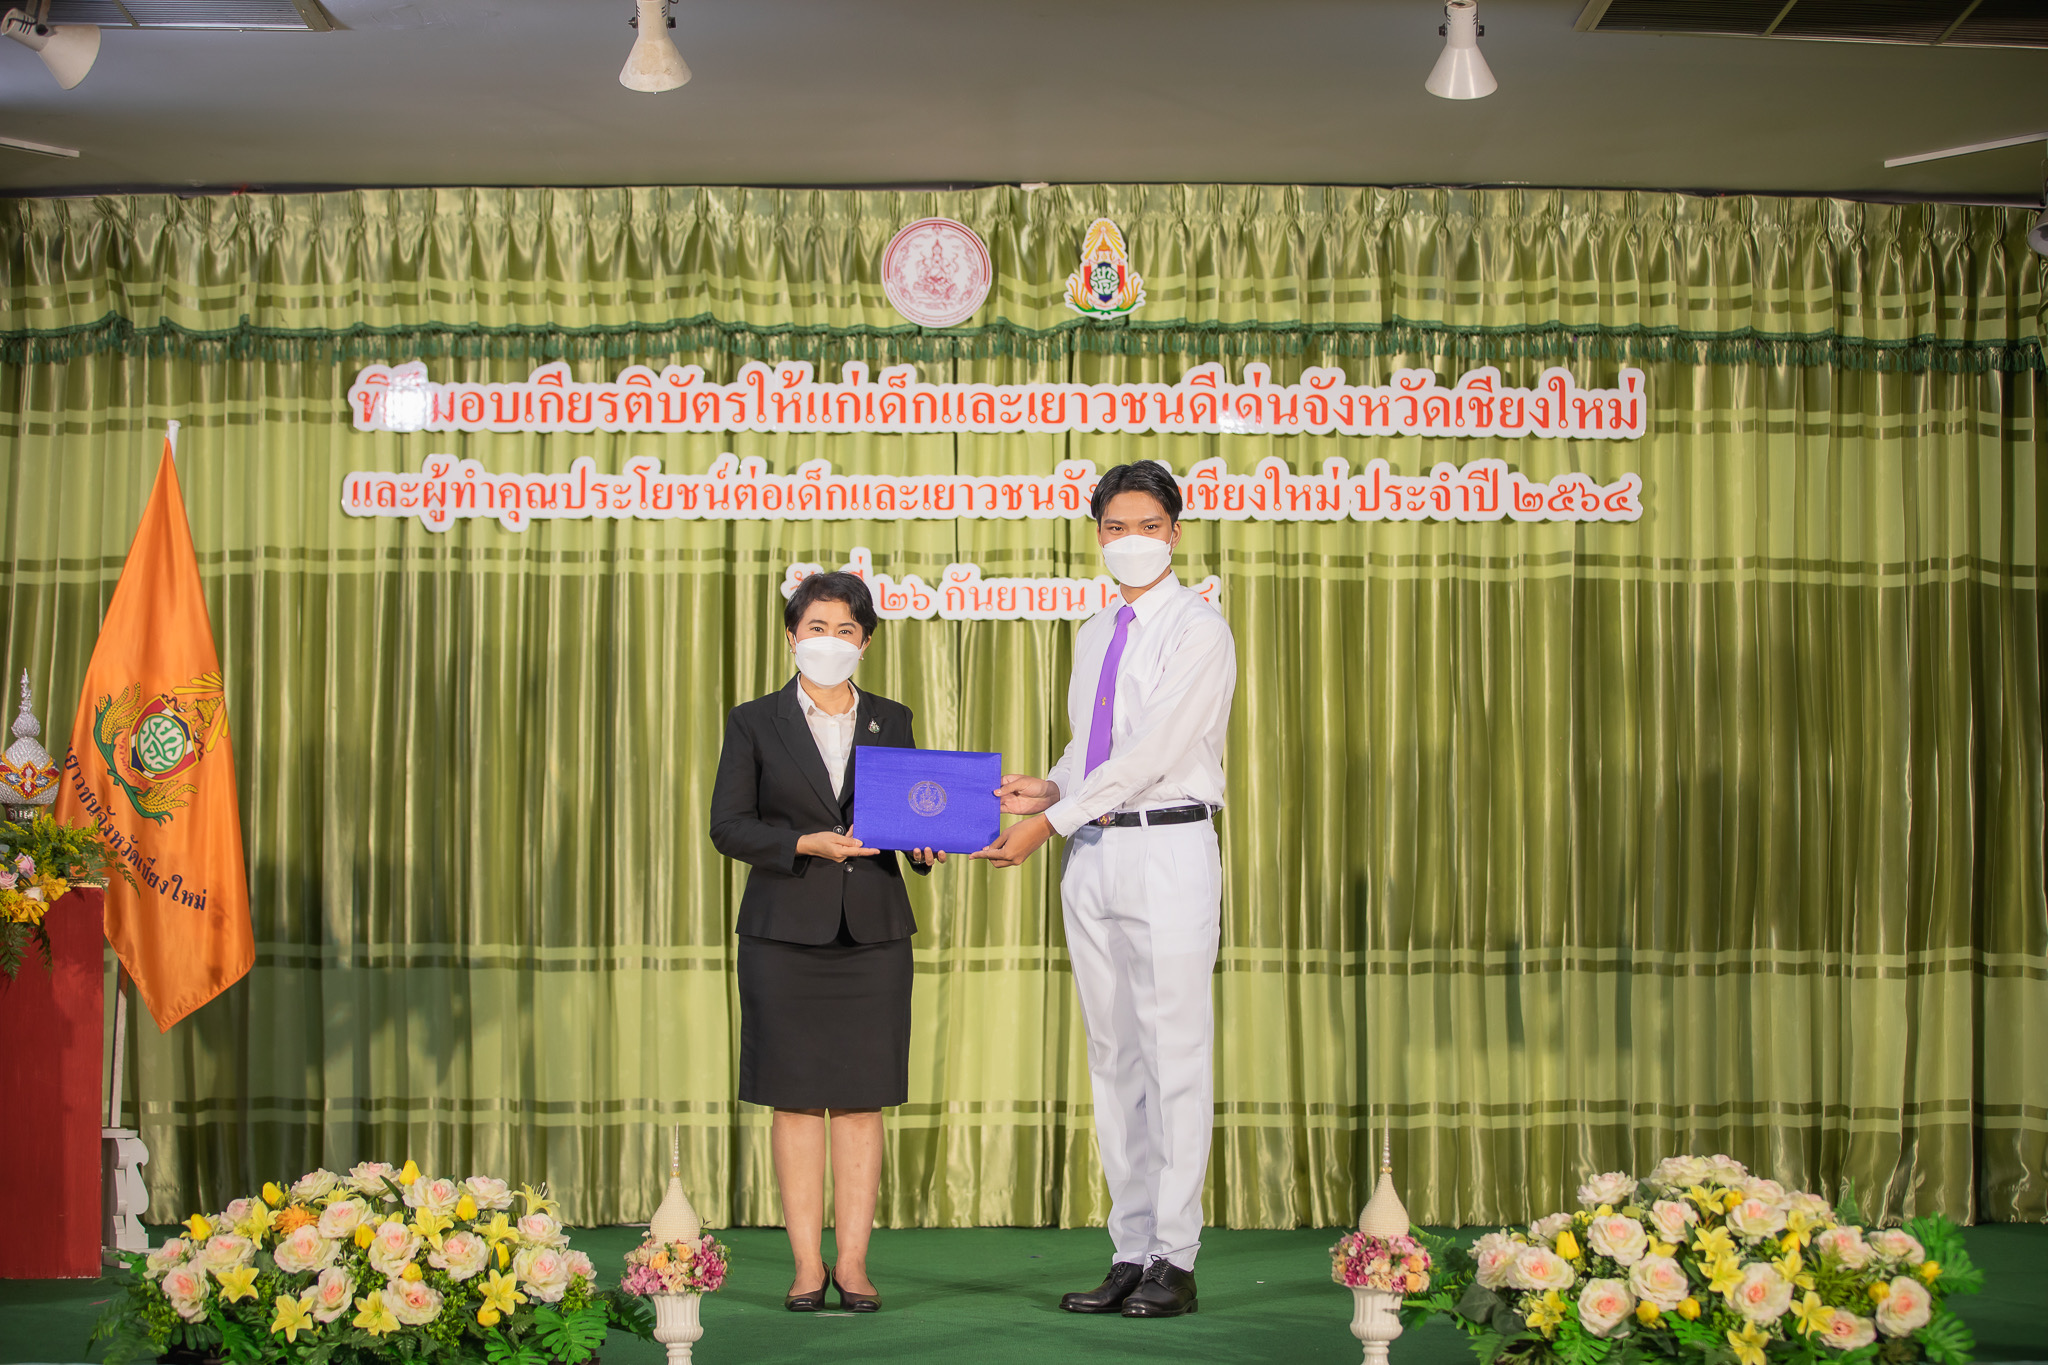 
	นักศึกษาพยาบาลชั้นปีที่ 1 ได้รับรางวัลเด็กและเยาวชนดีเด่นจังหวัดเชียงใหม่ ประจำปี 2564
